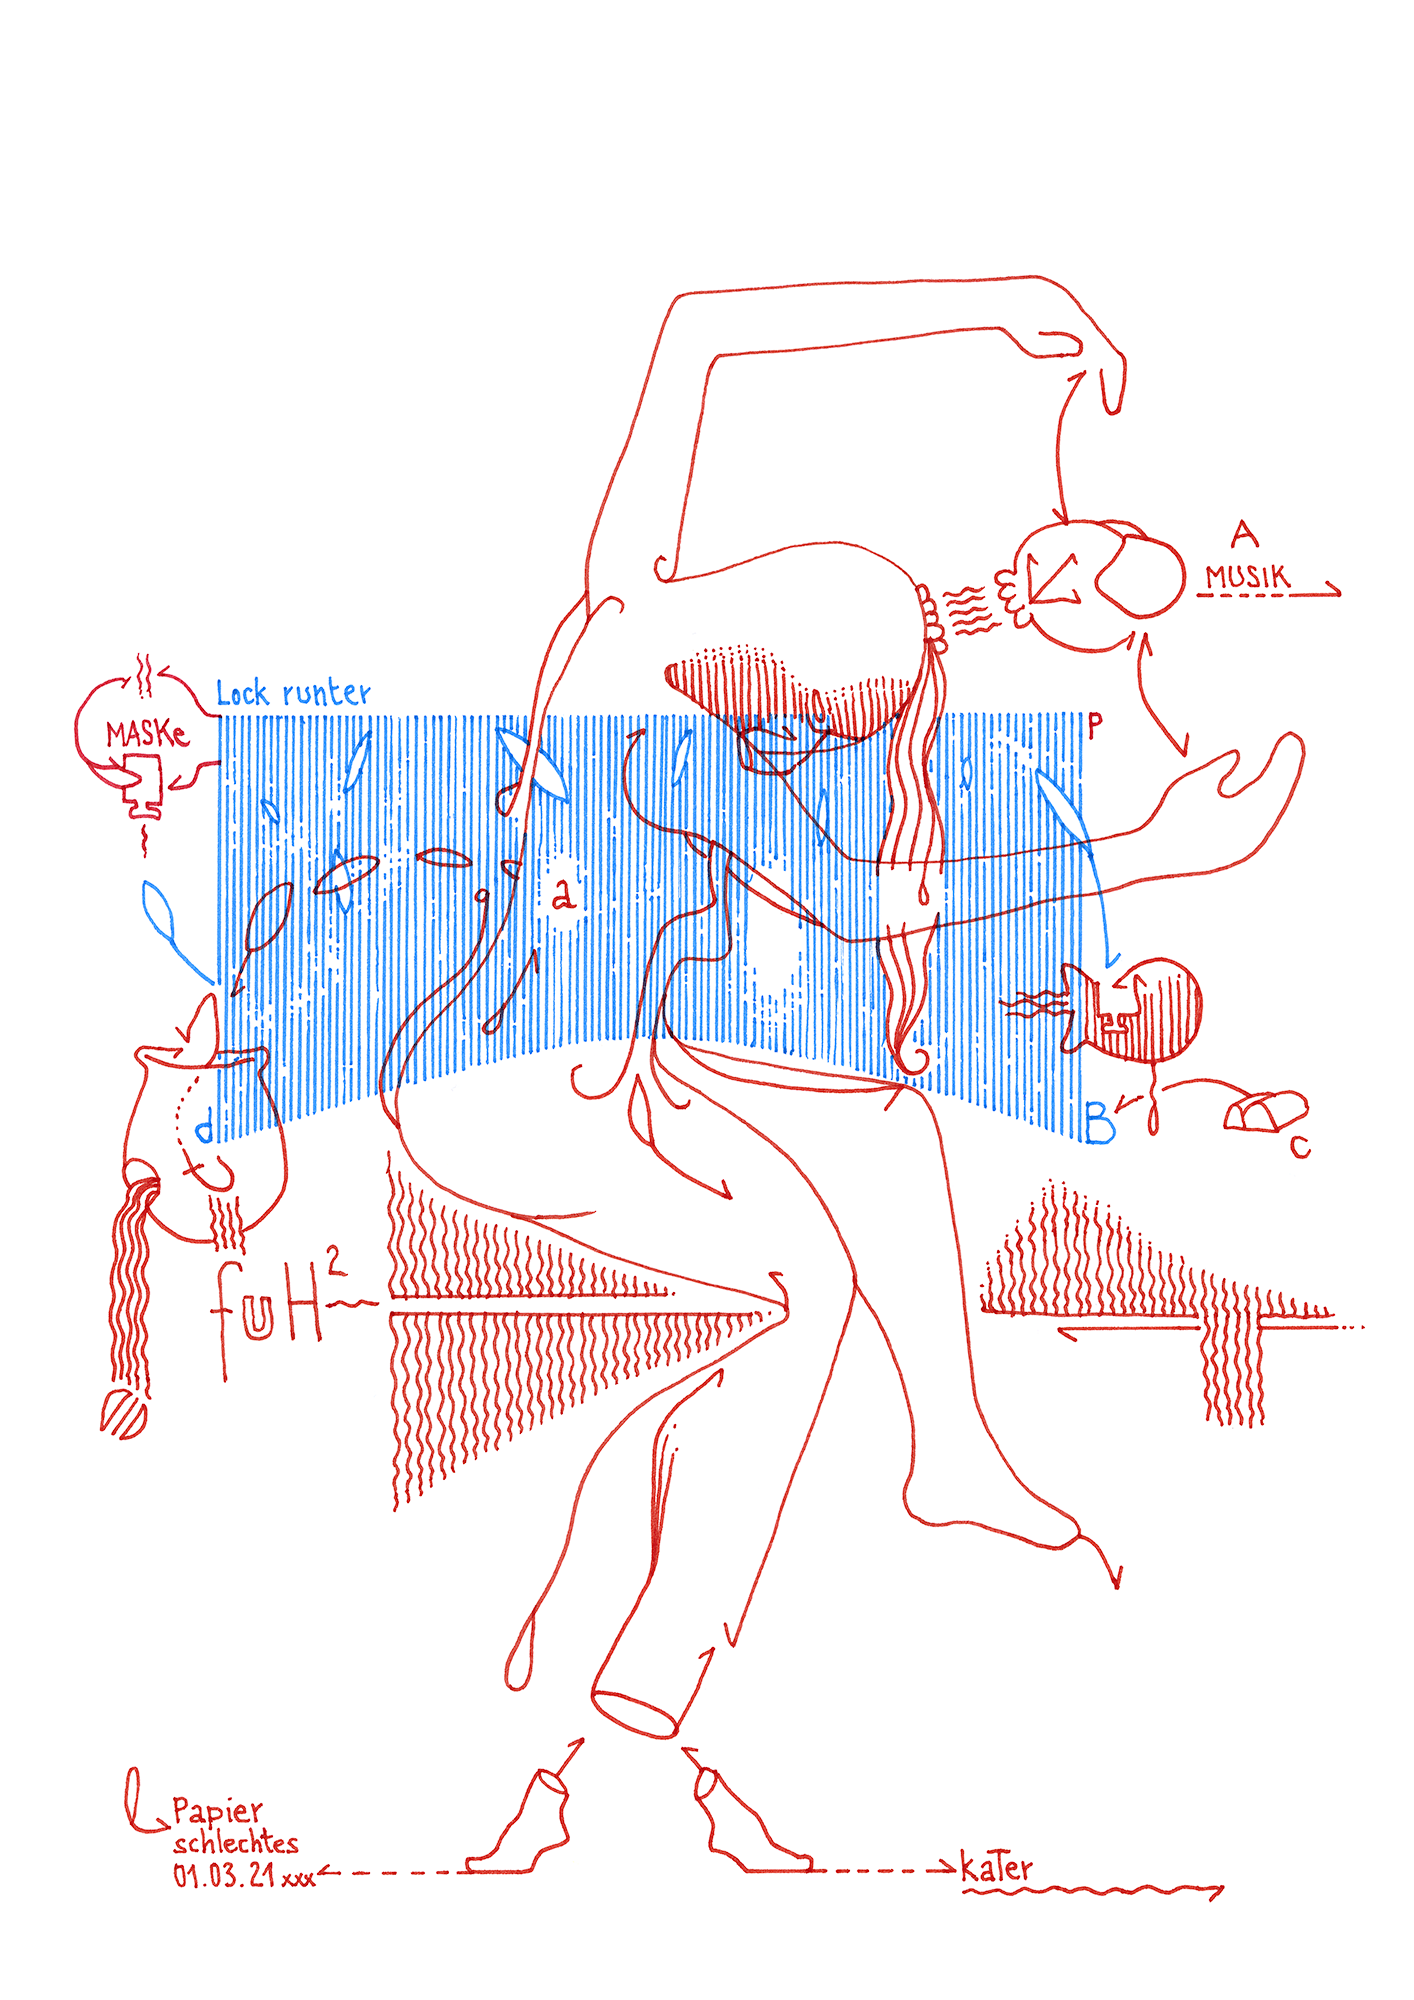 Hannes Kater: Tageszeichnung (Zeichnung/drawing) vom 01.03.2021 (1414 x 2000 Pixel)